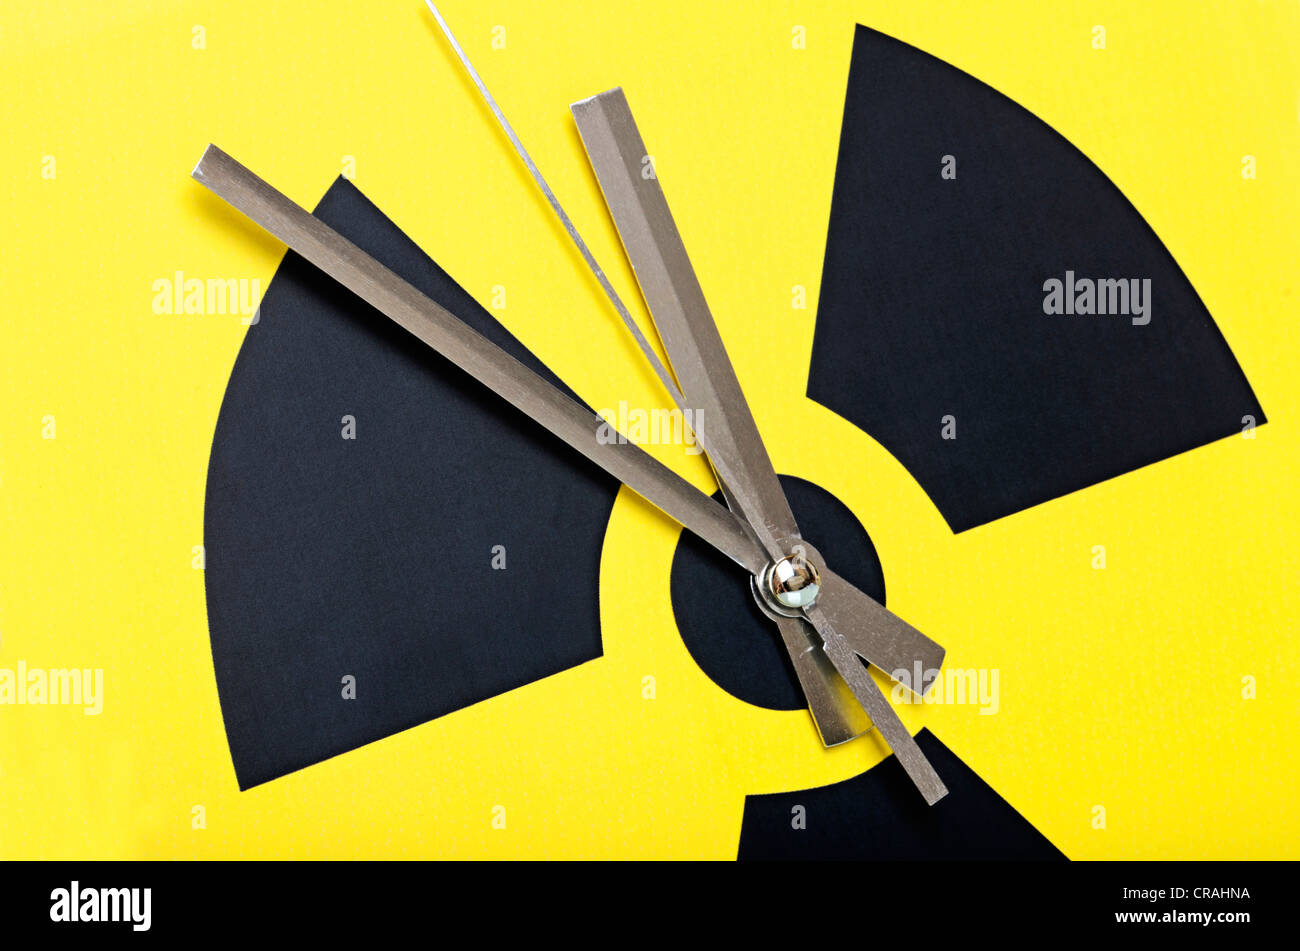 Simbolo atomico con orologio mani impostata a 11:55, immagine simbolica per la fase di uscita di potenza nucleare Foto Stock